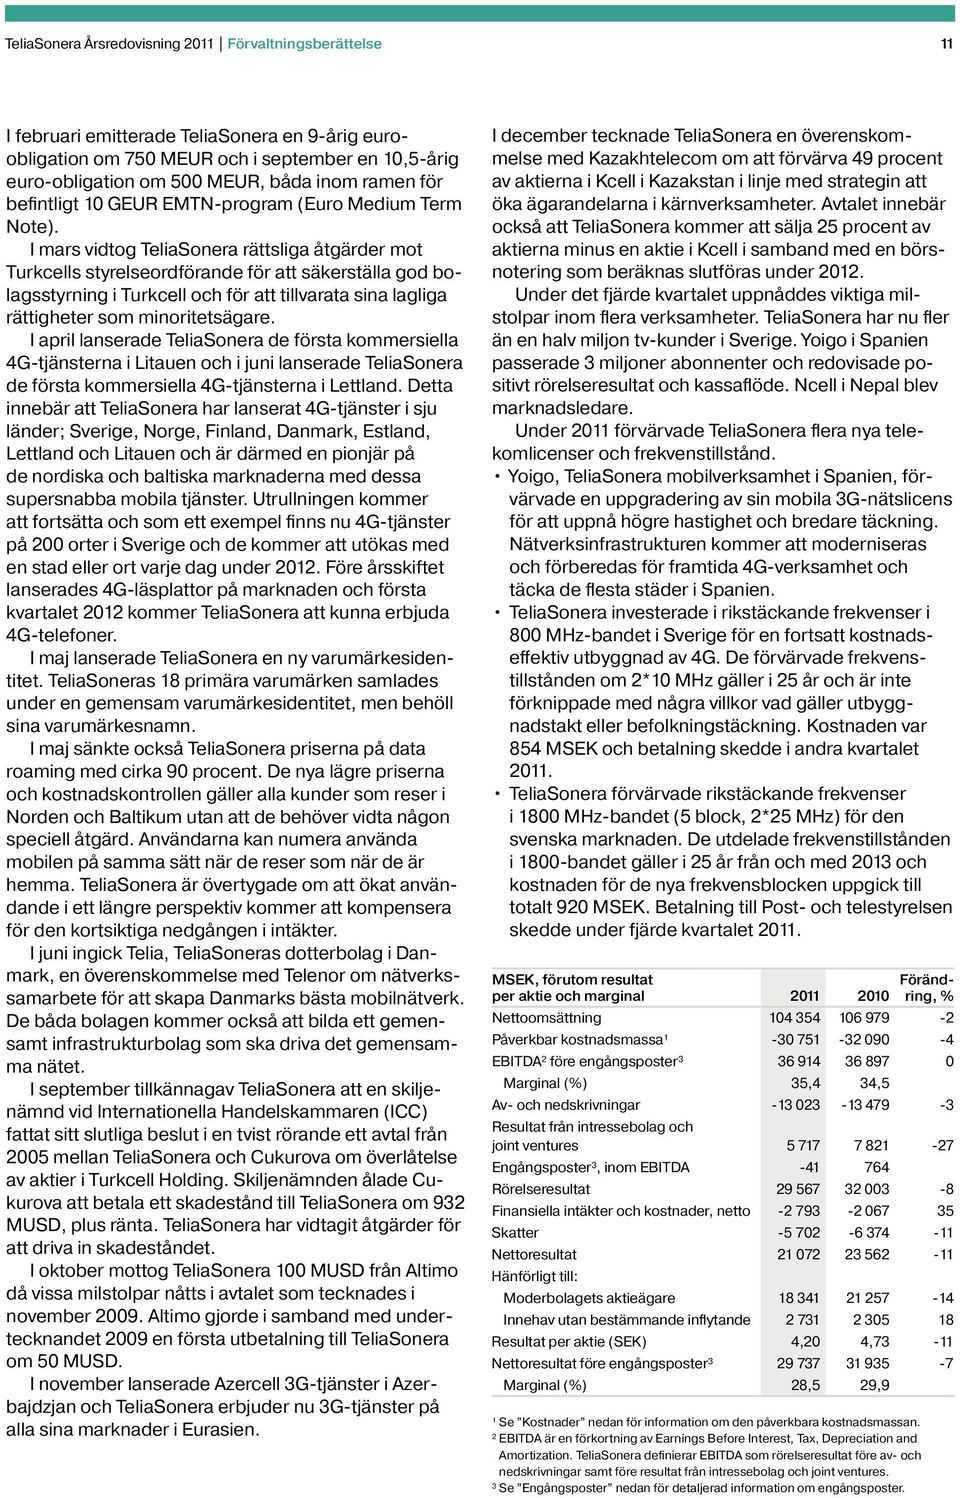 I mars vidtog TeliaSonera rättsliga åtgärder mot Turkcells styrelseordförande för att säkerställa god bolagsstyrning i Turkcell och för att tillvarata sina lagliga rättigheter som minoritetsägare.